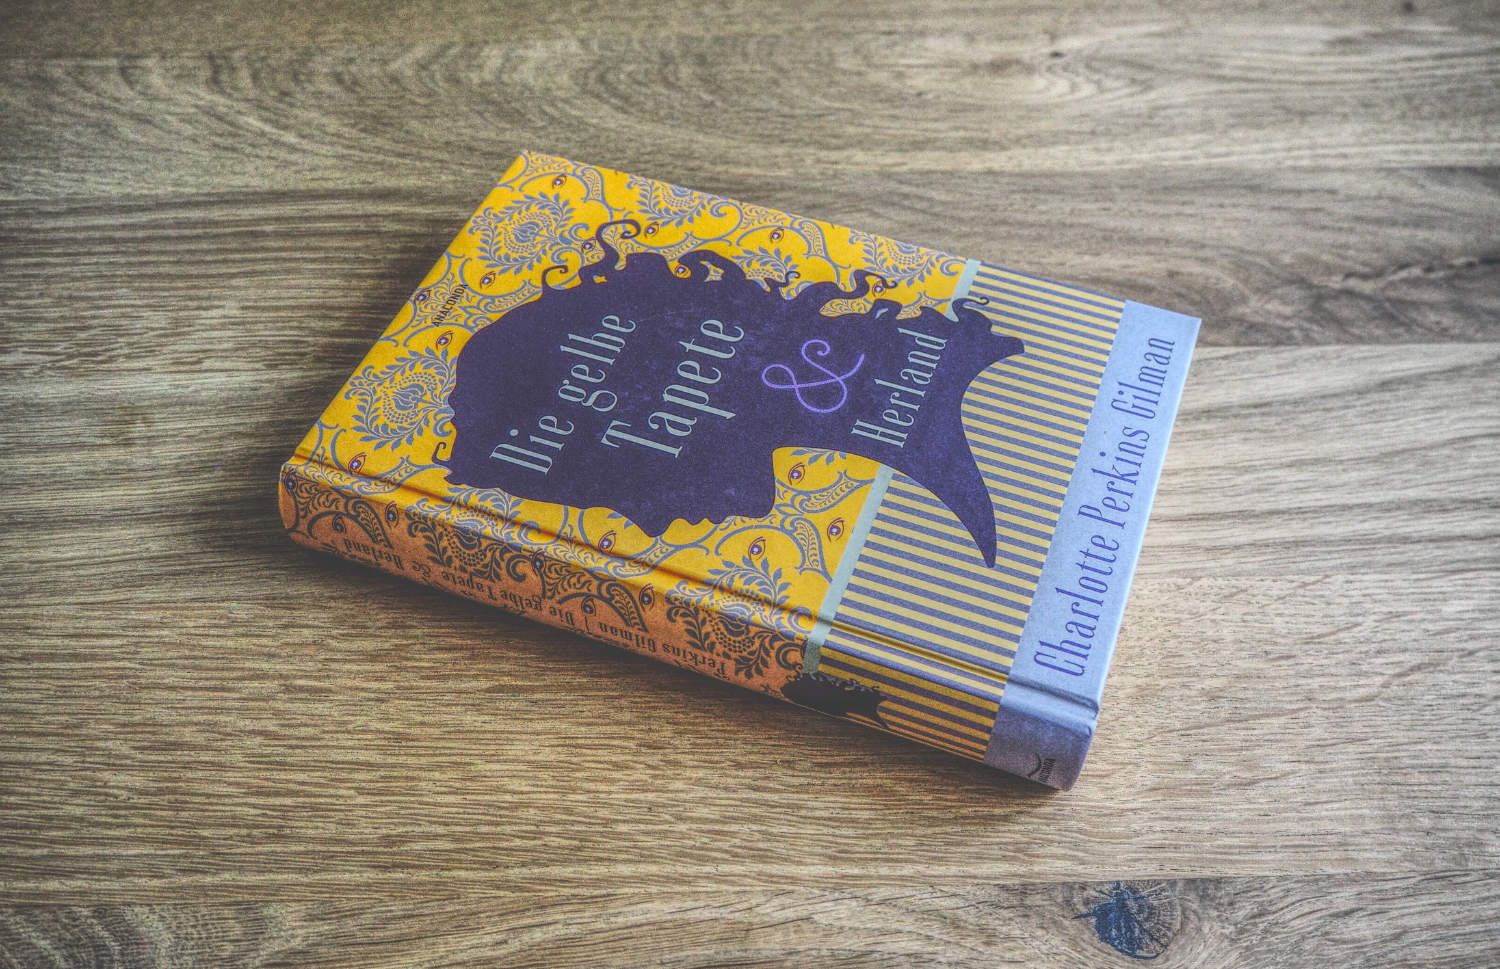 Ein gelb-violettes Buch auf einem Holztisch.